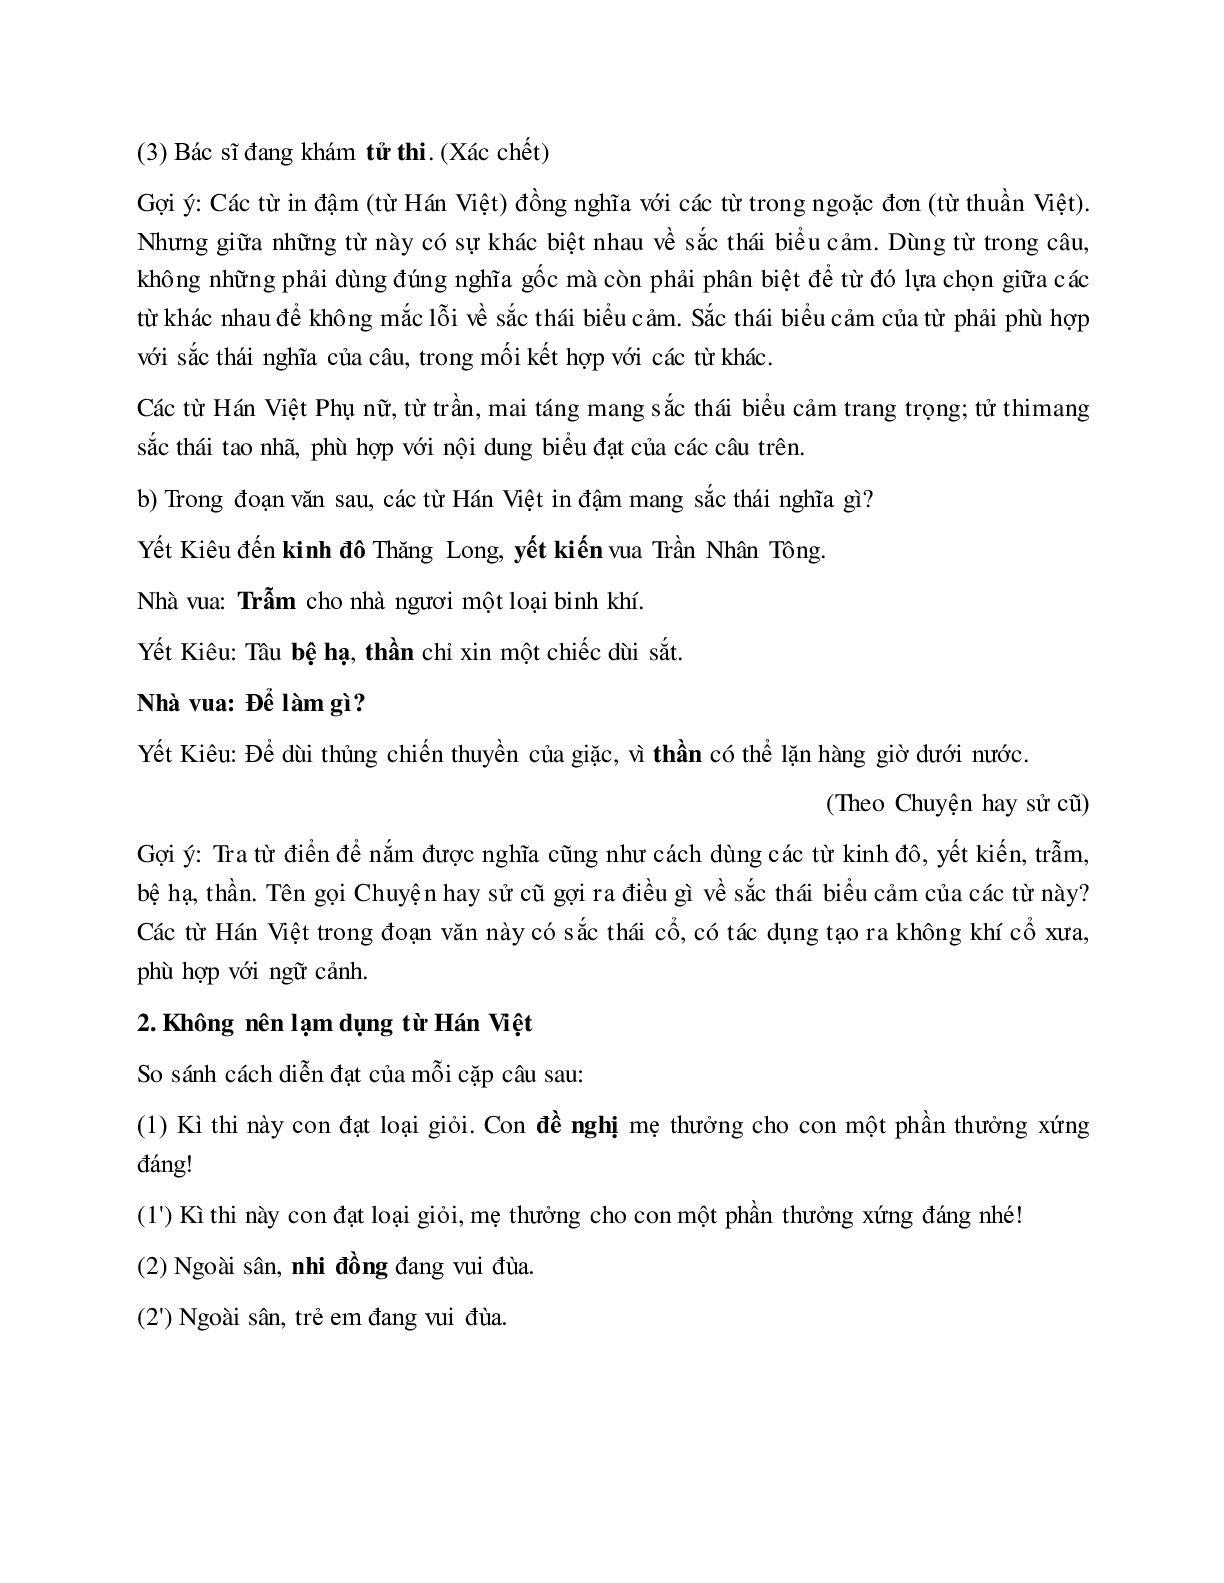 Soạn bài Từ Hán việt (tiếp theo) - ngắn nhất Soạn văn 7 (trang 3)